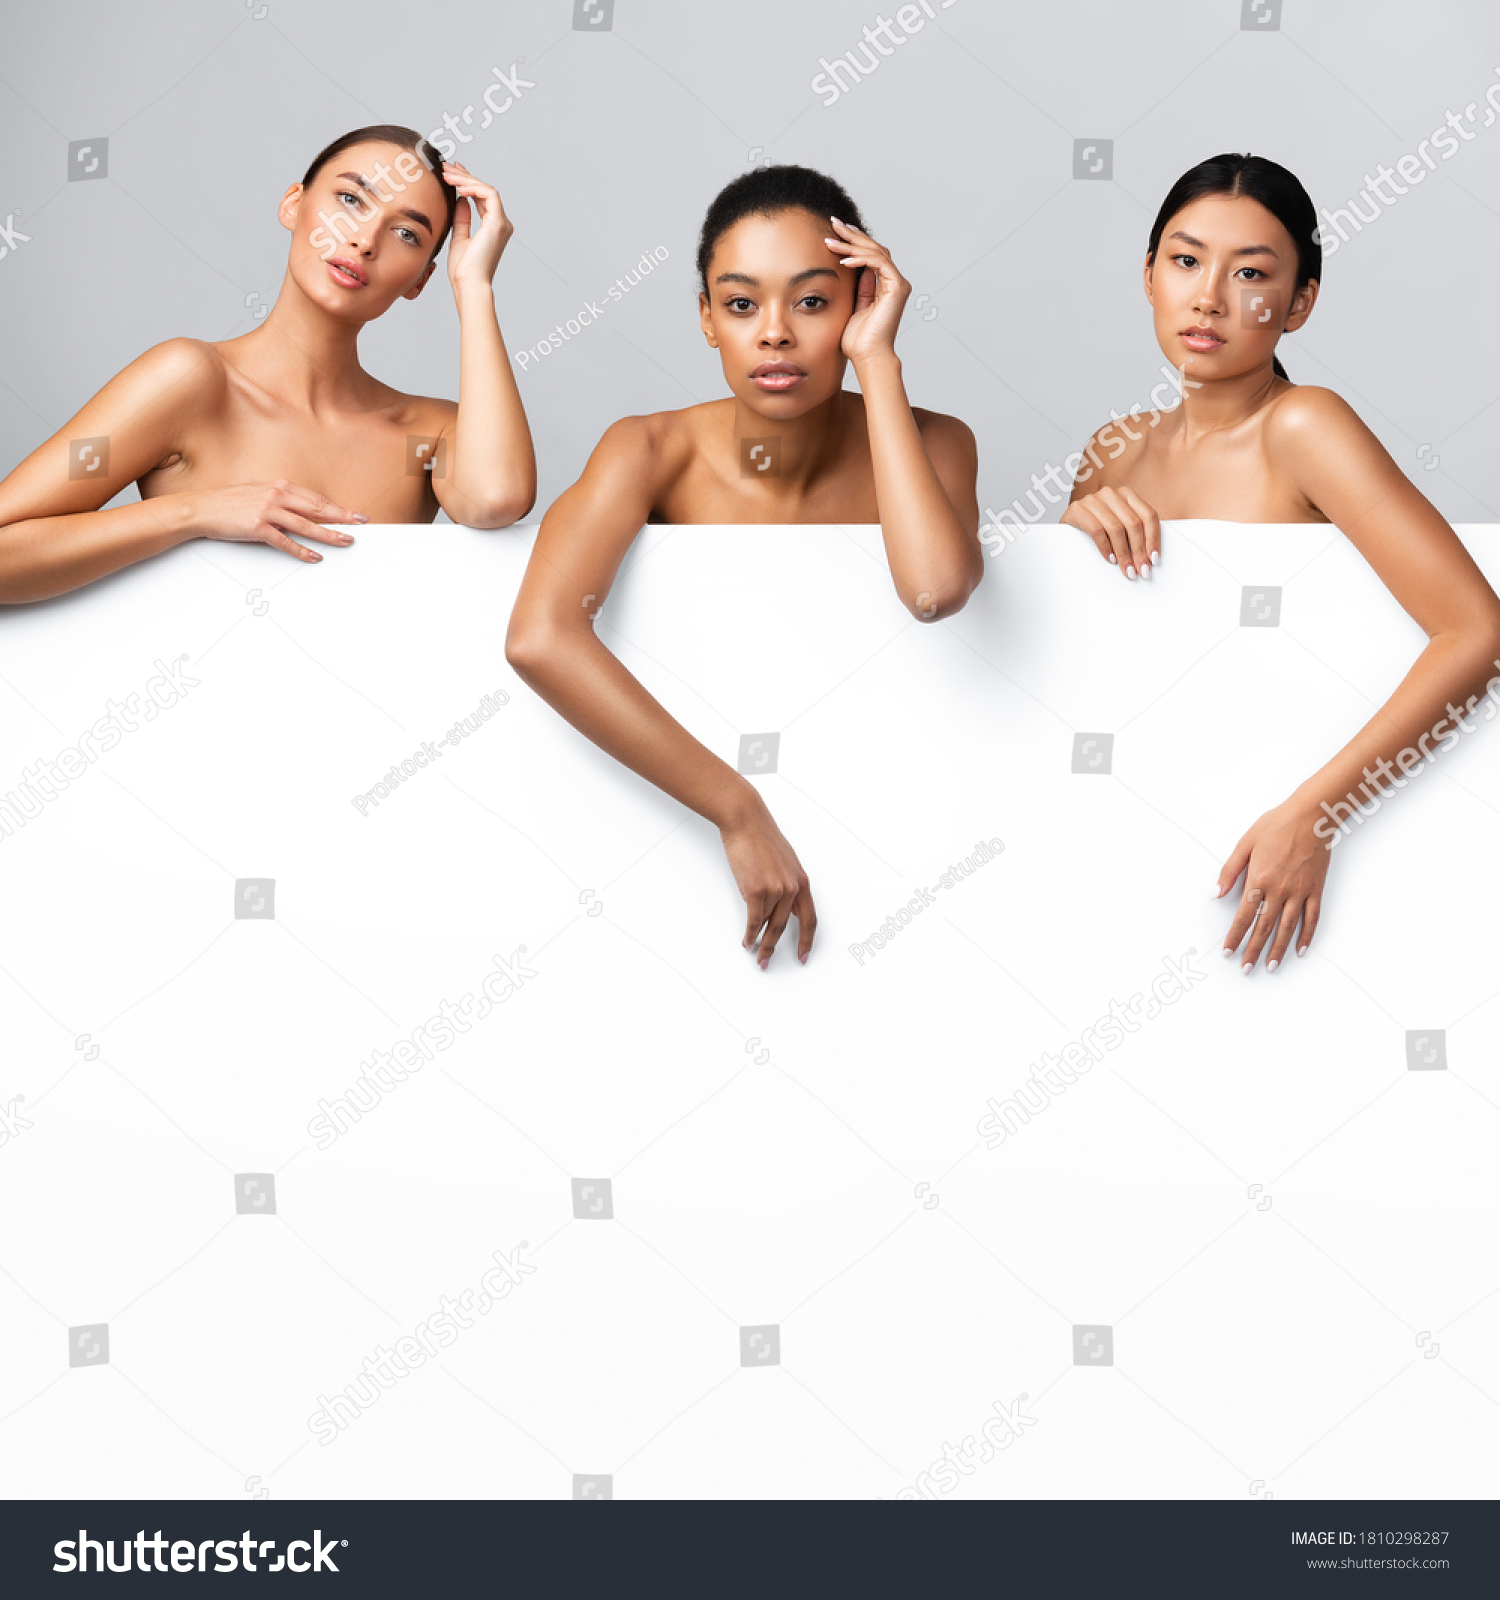 Girls Standing Naked